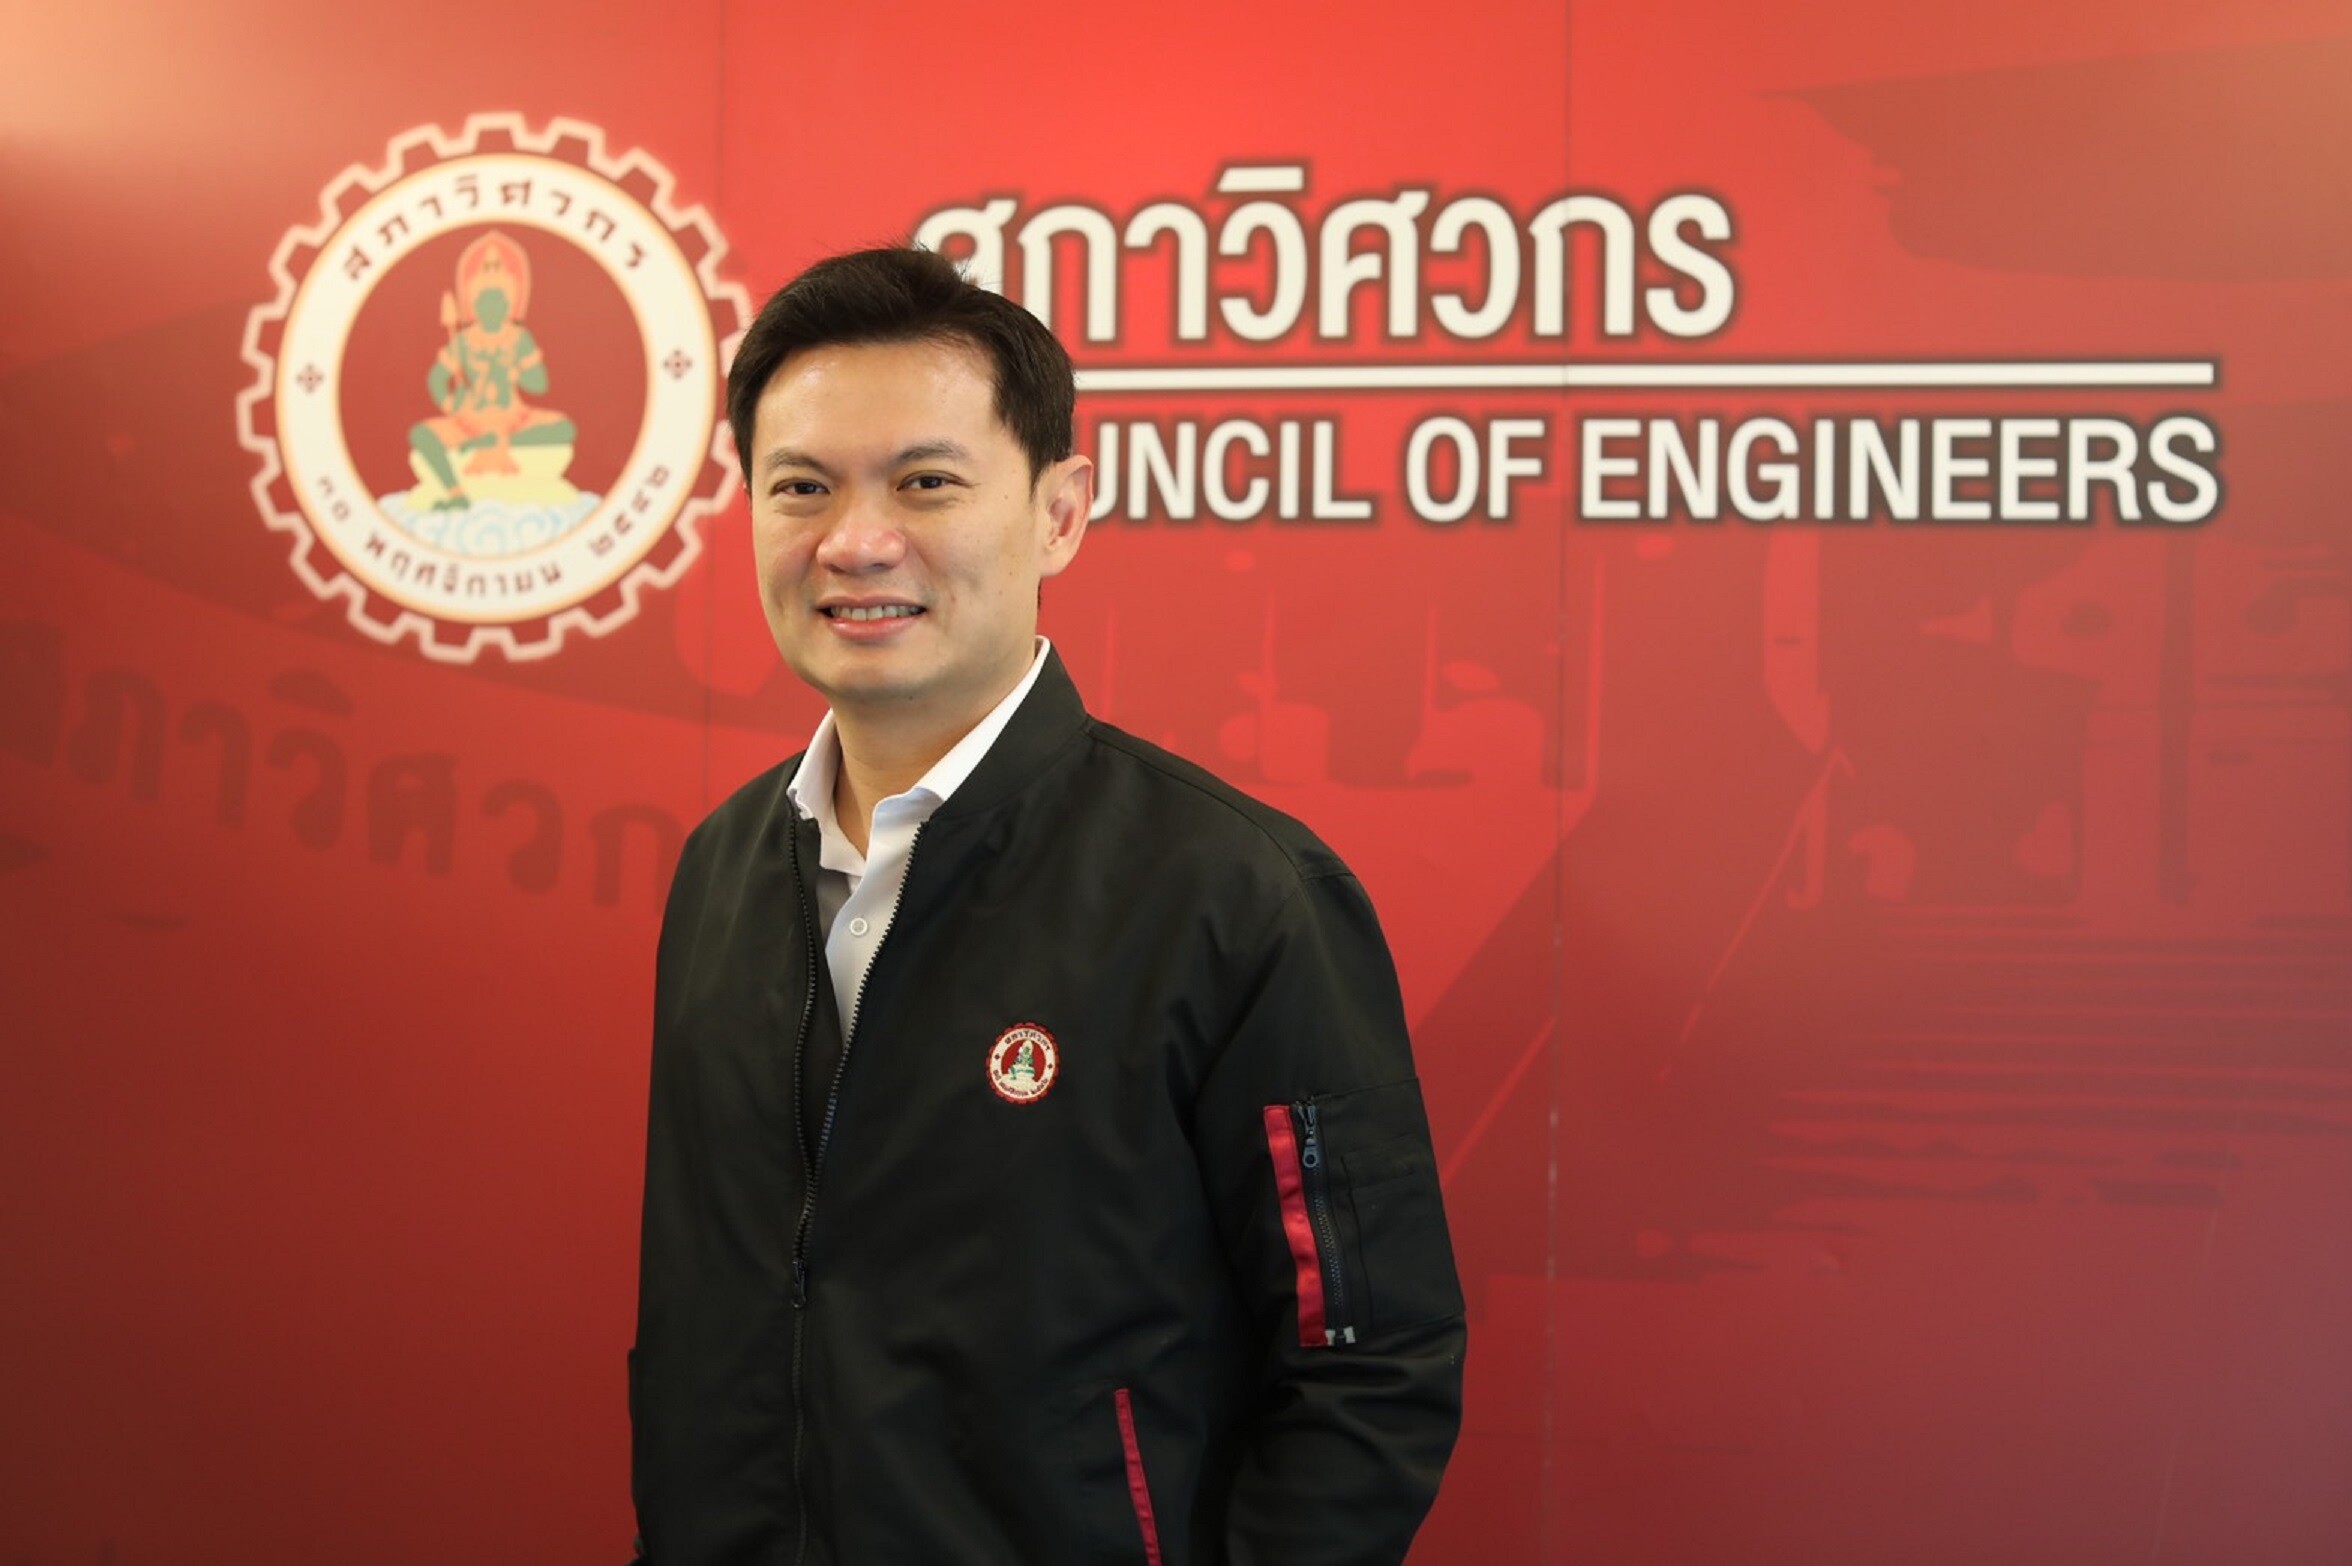 สภาวิศวกร ปลื้มศักยภาพ “วิศวกร-มหาวิทยาลัยไทย” หนุนแพทย์-พยาบาล สู้โควิด-19  ด้วย “นวัตกรรมและเทคโนโลยี”